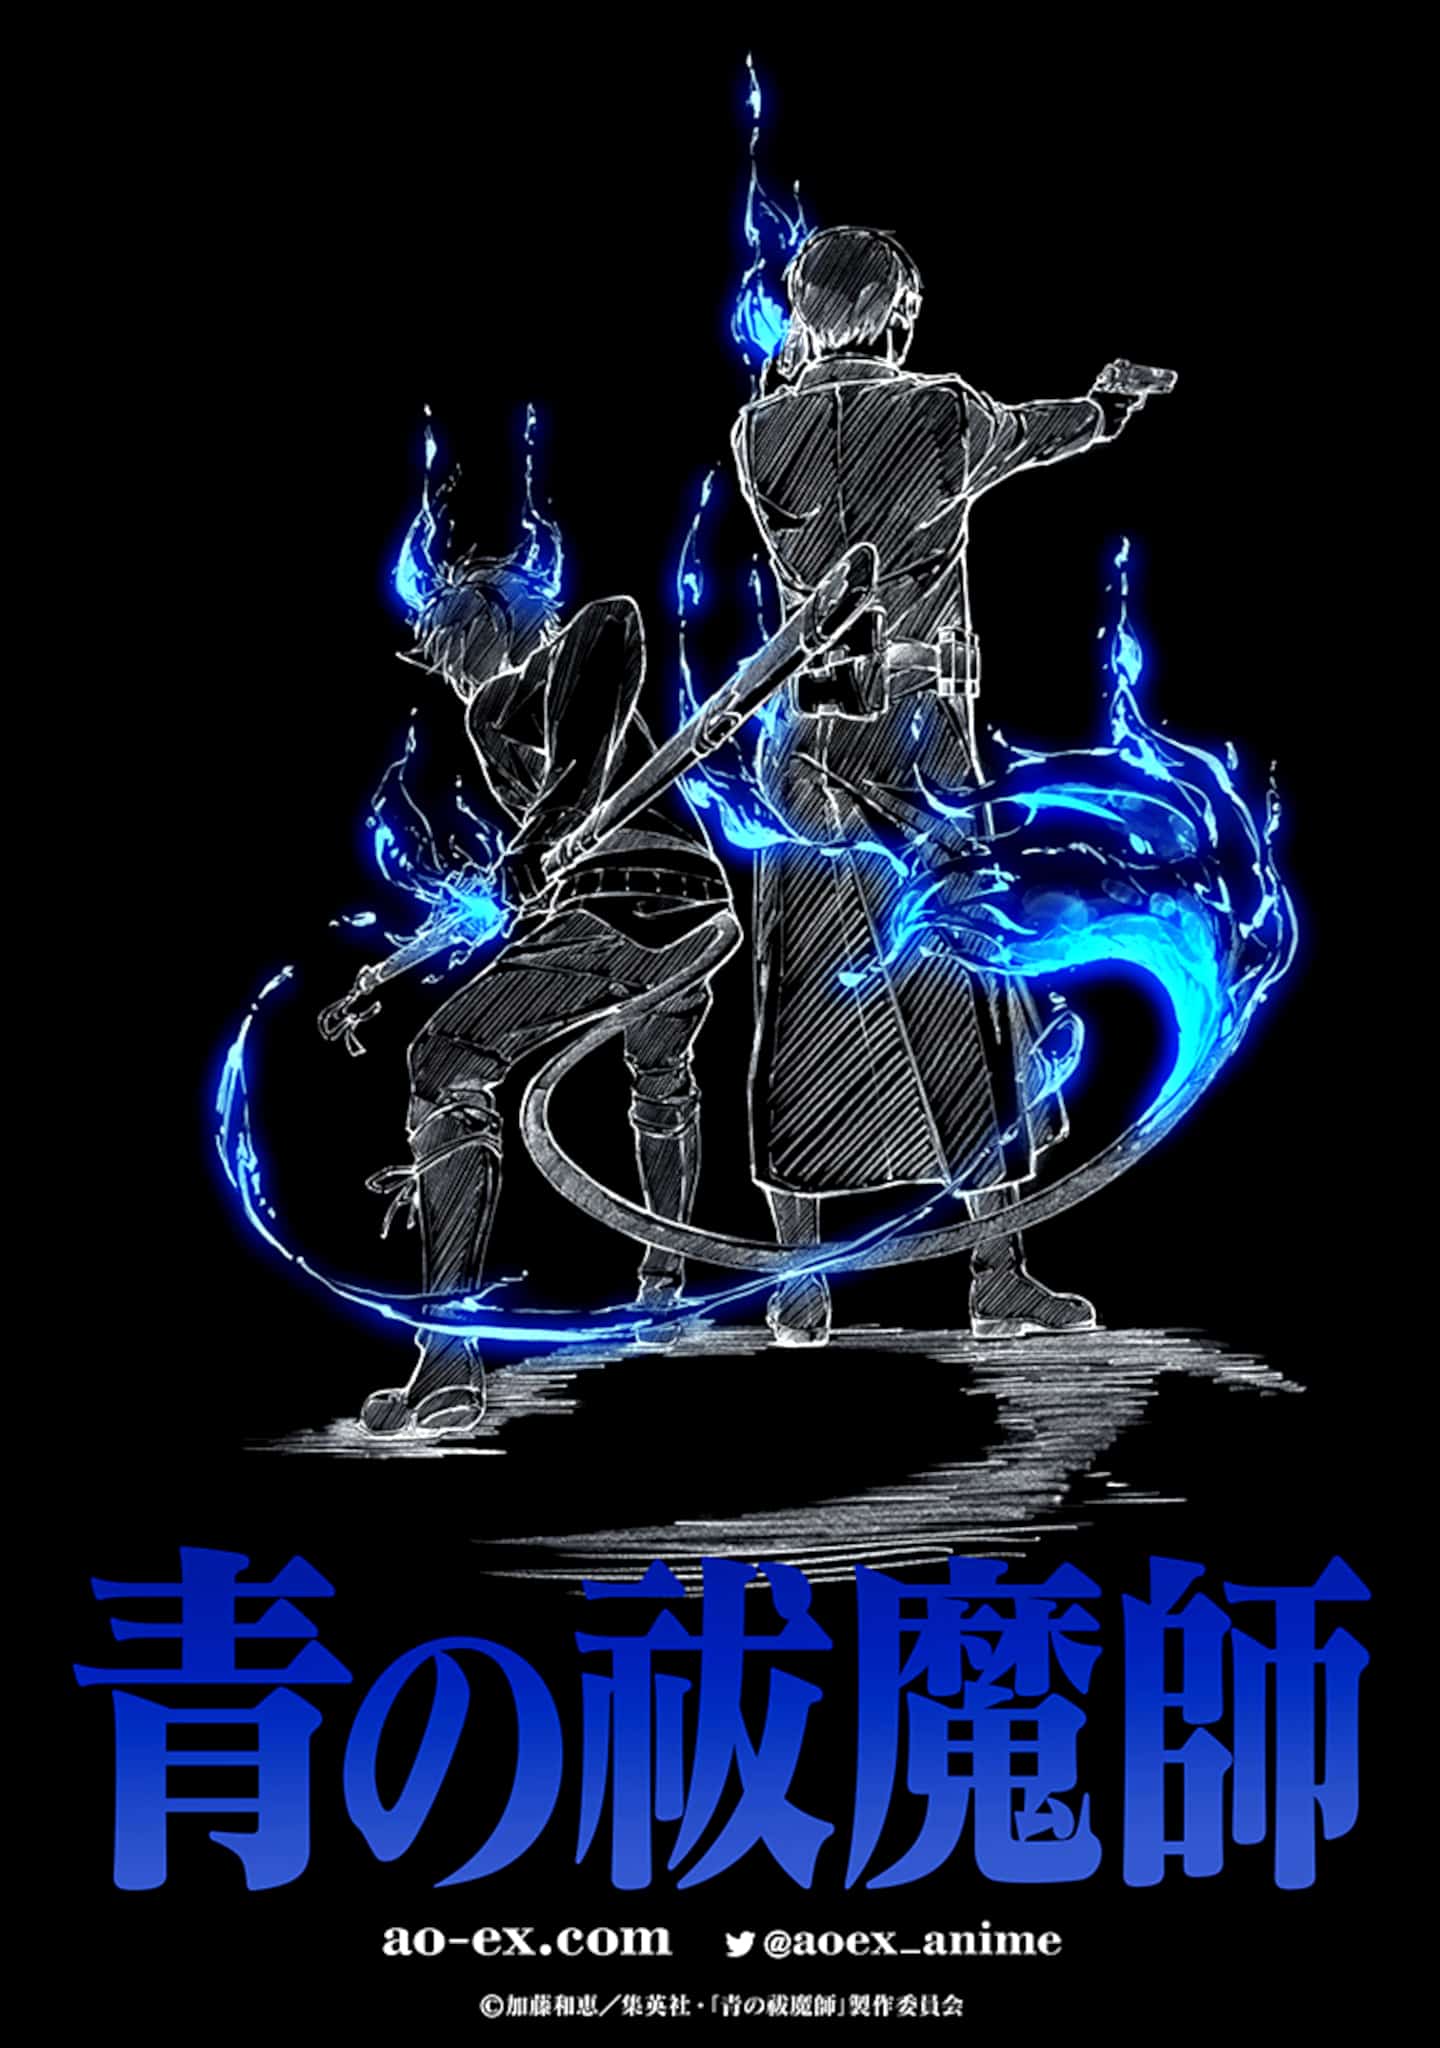 Annonce du nouvel anime Blue Exorcist